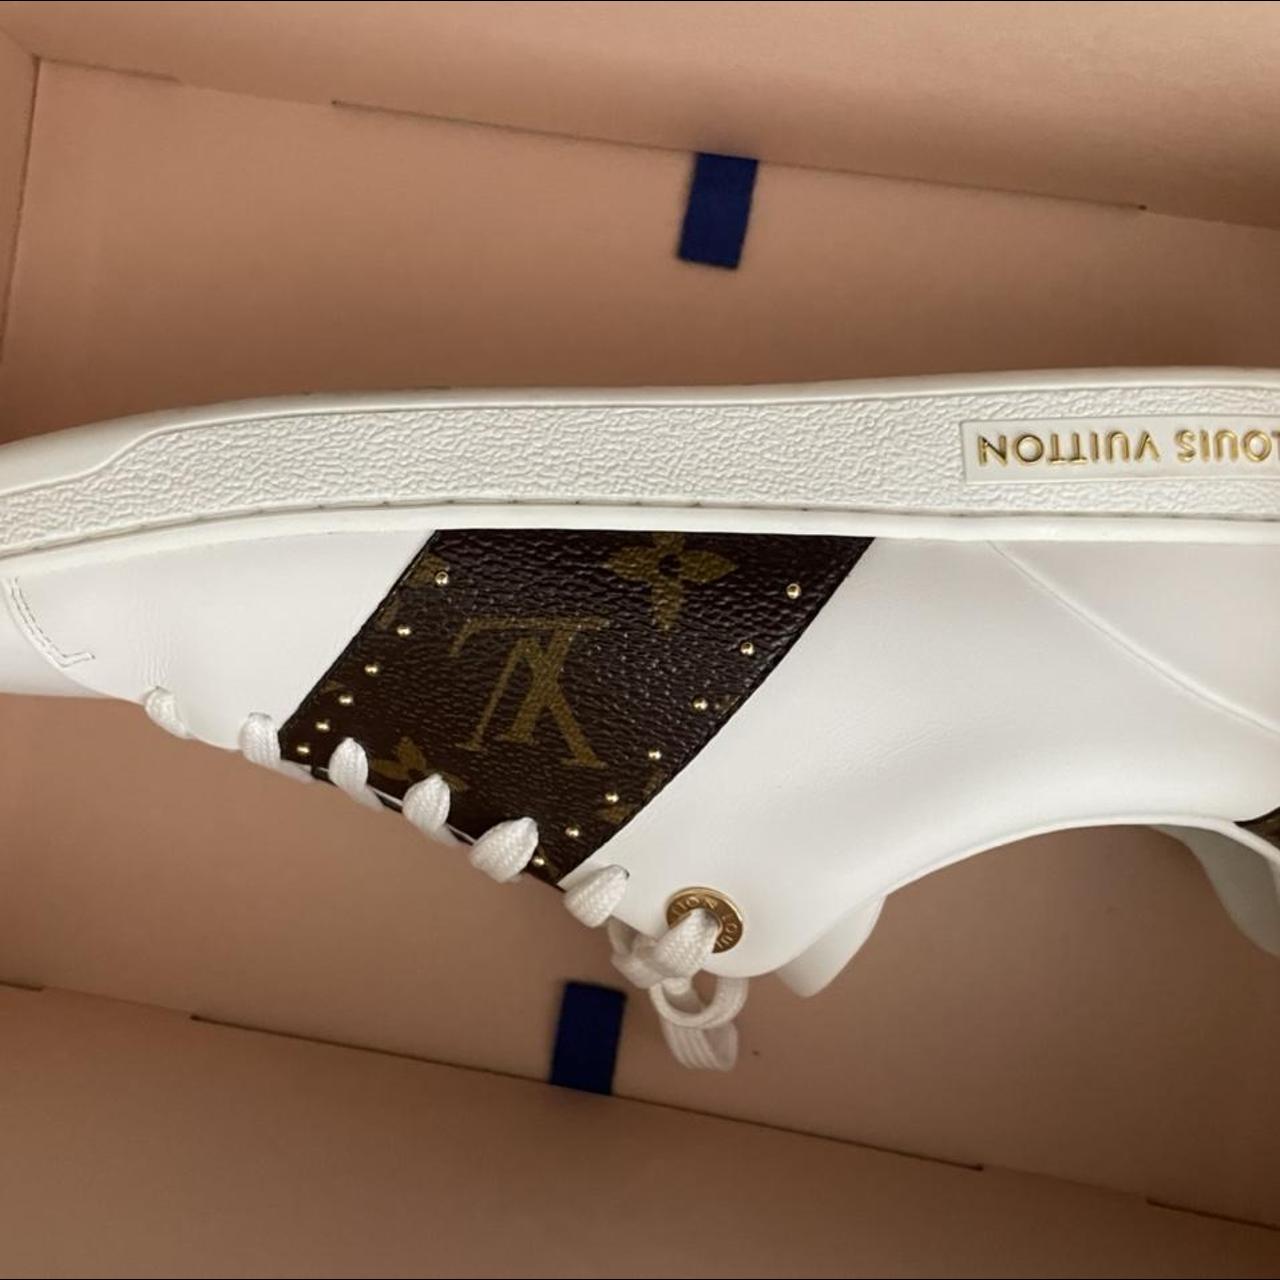 Authentic Louis Vuitton Espadrilles Shoes Size 37 - Depop